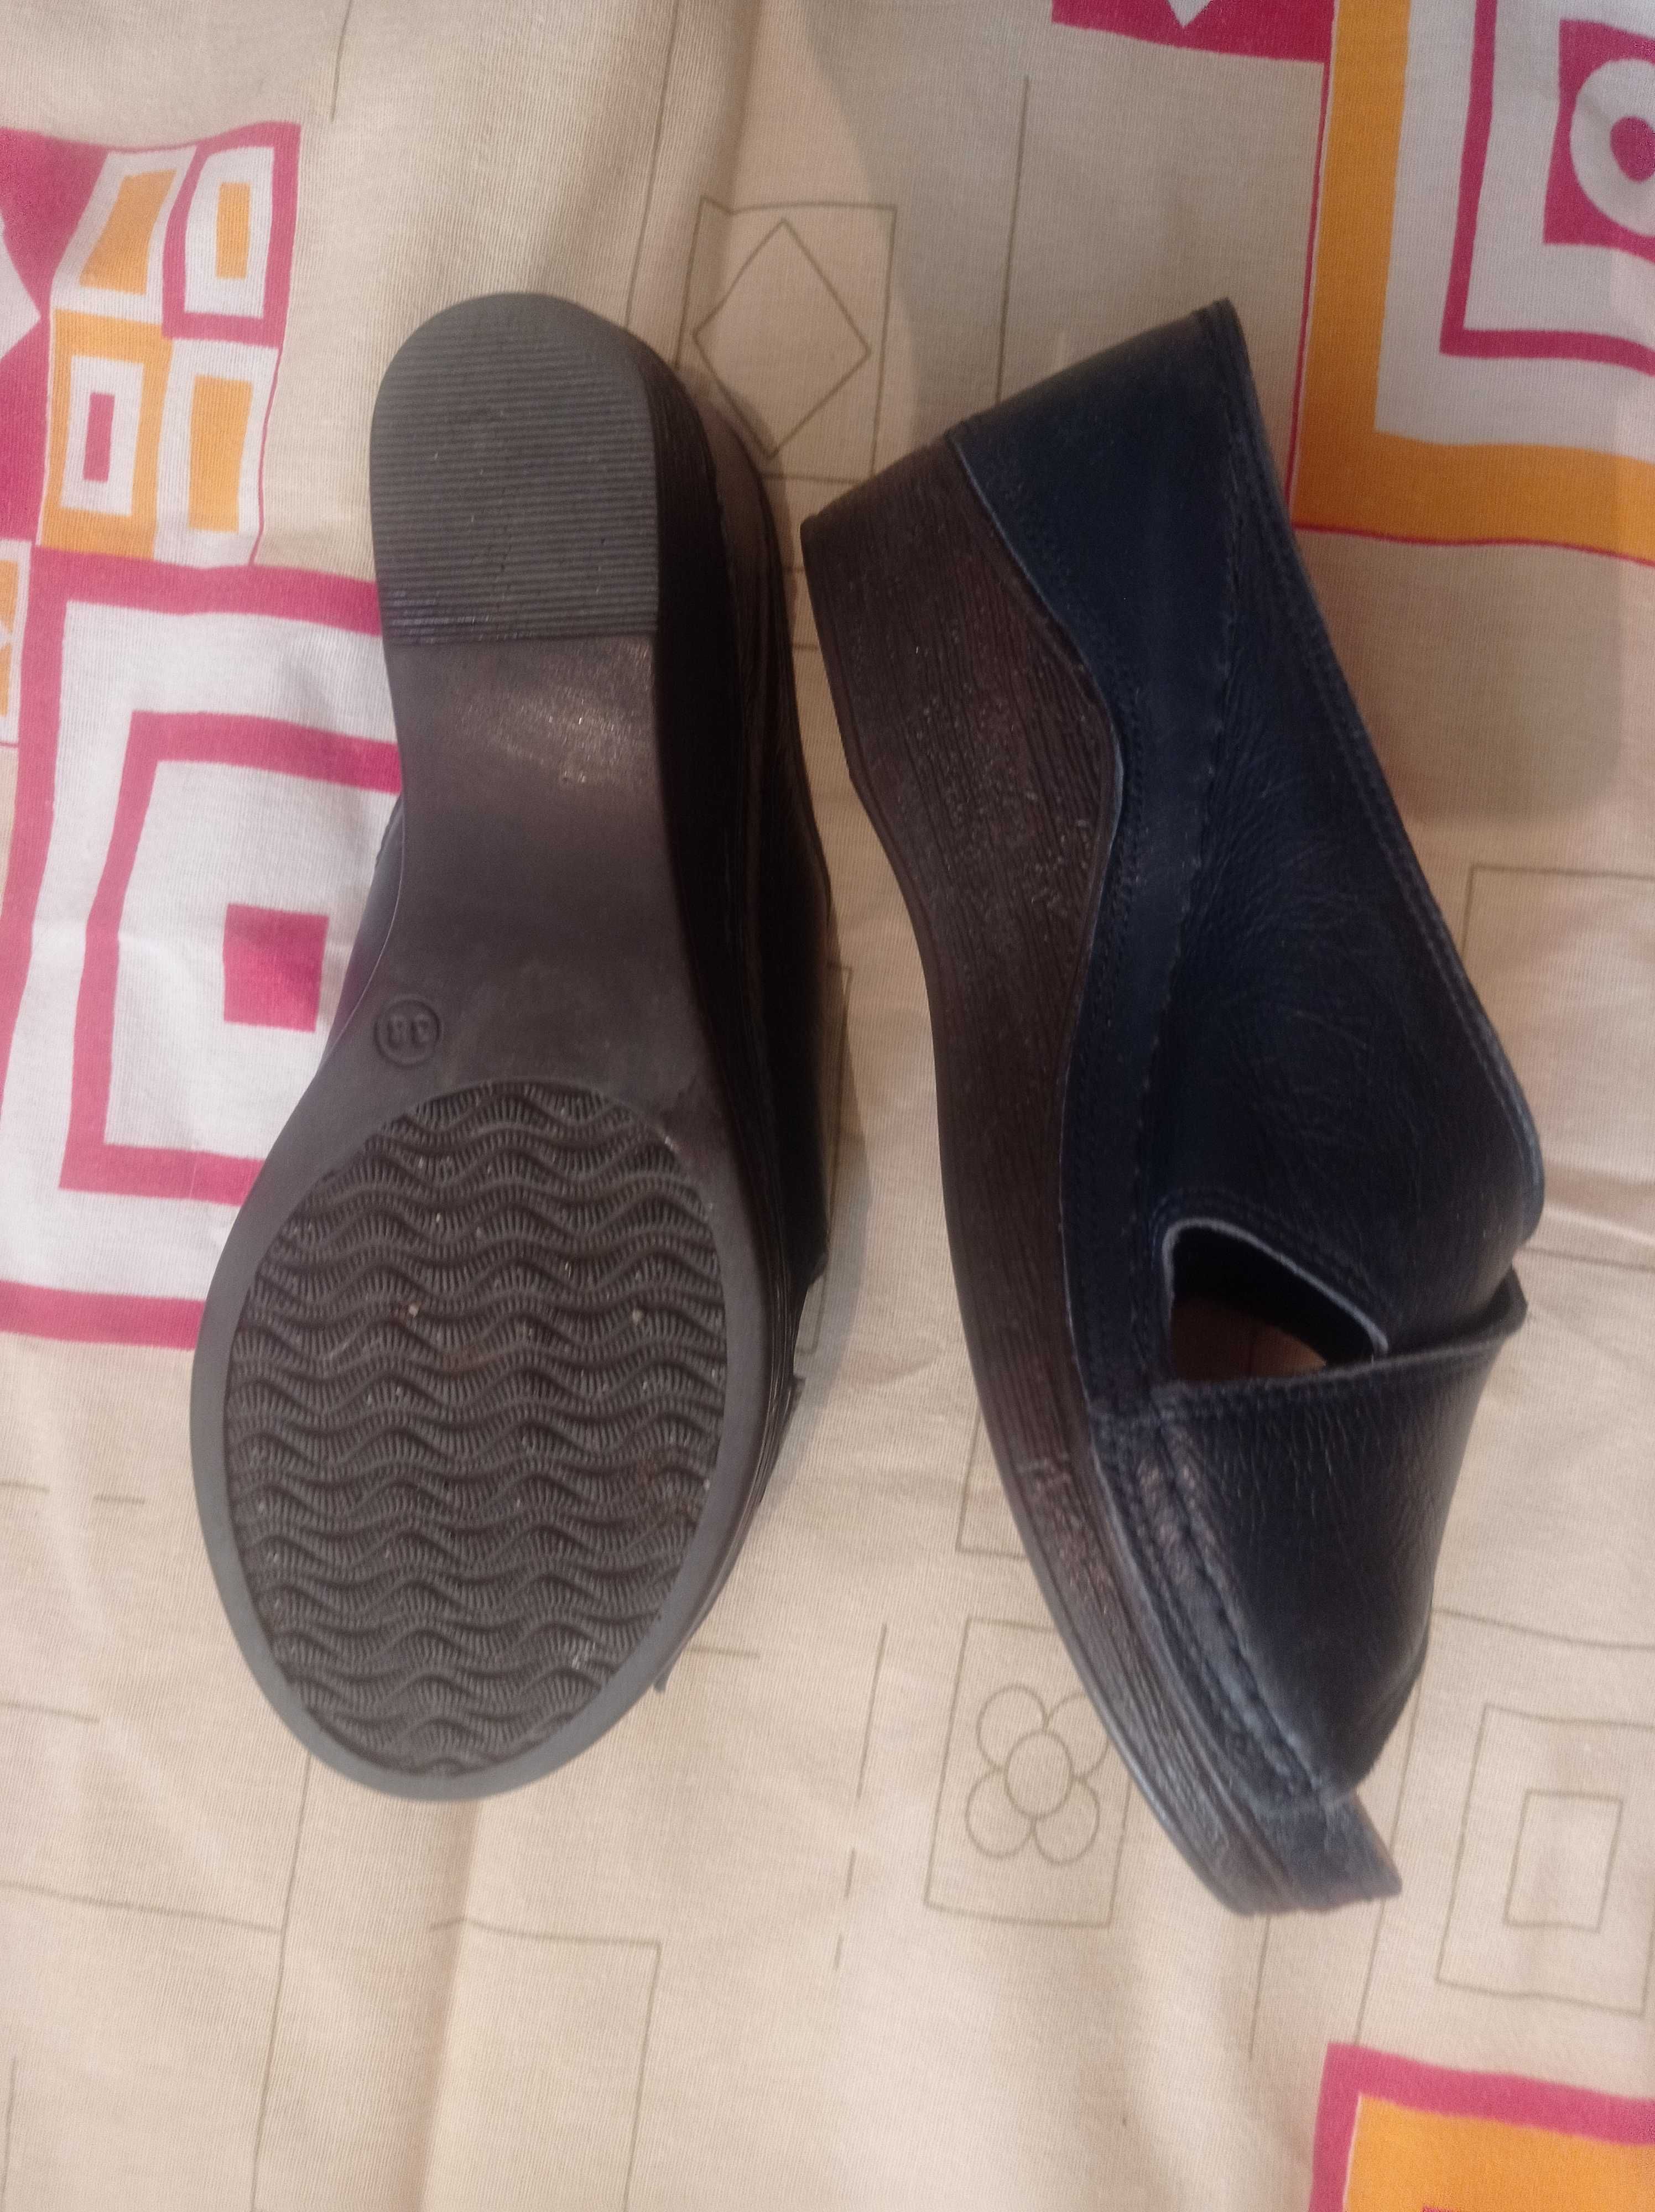 Продаем женские туфли на платформе PERRA DONNA. Р-р: 38